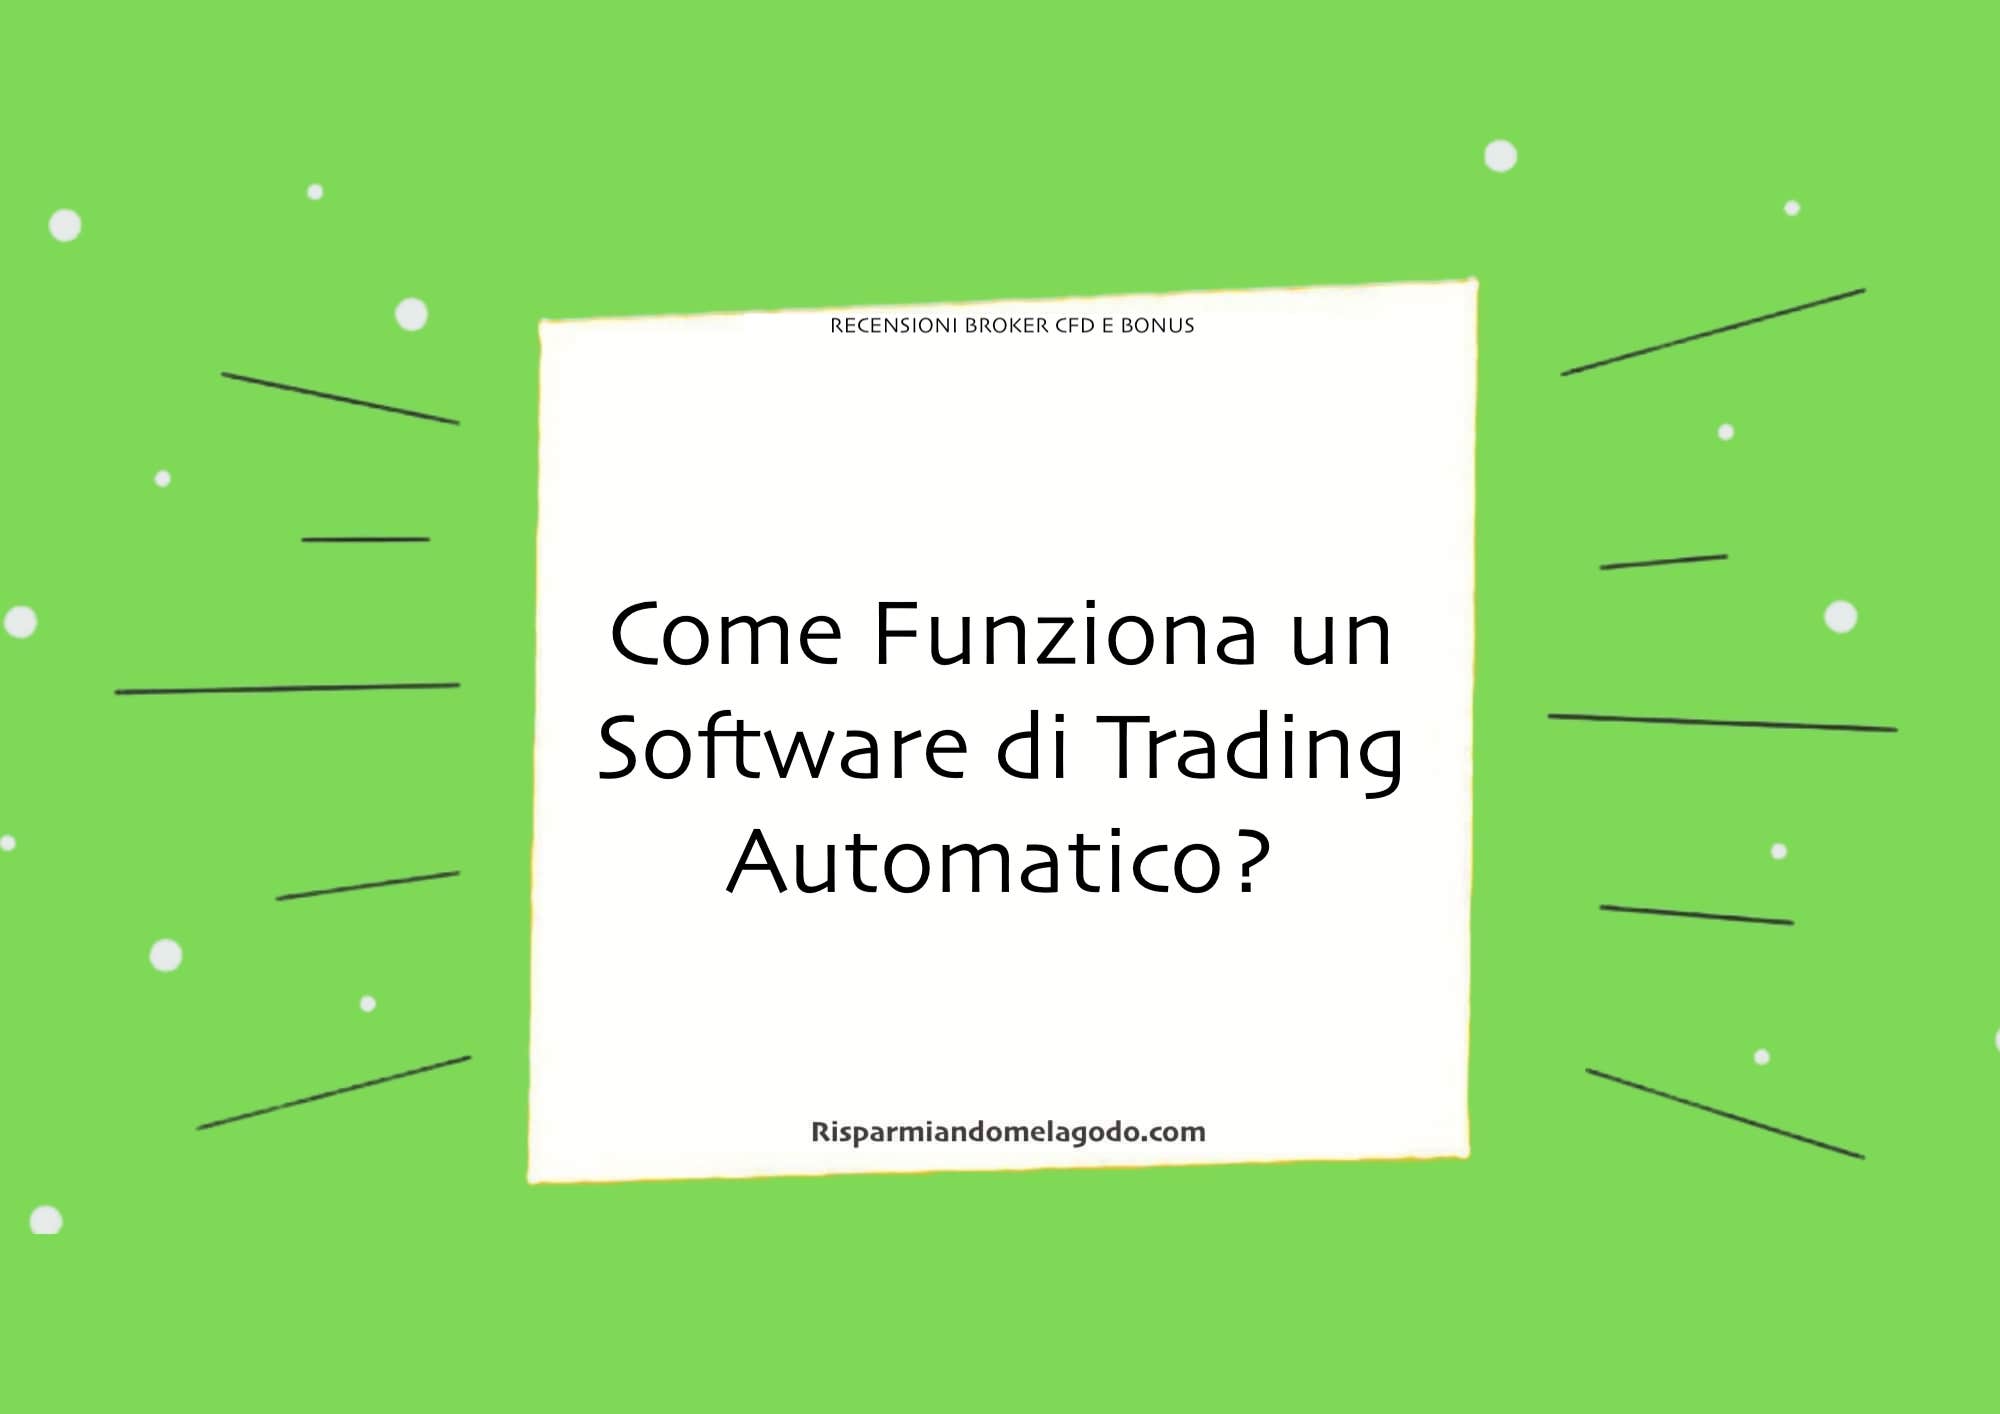 Come Funziona un Software di Trading Automatico?